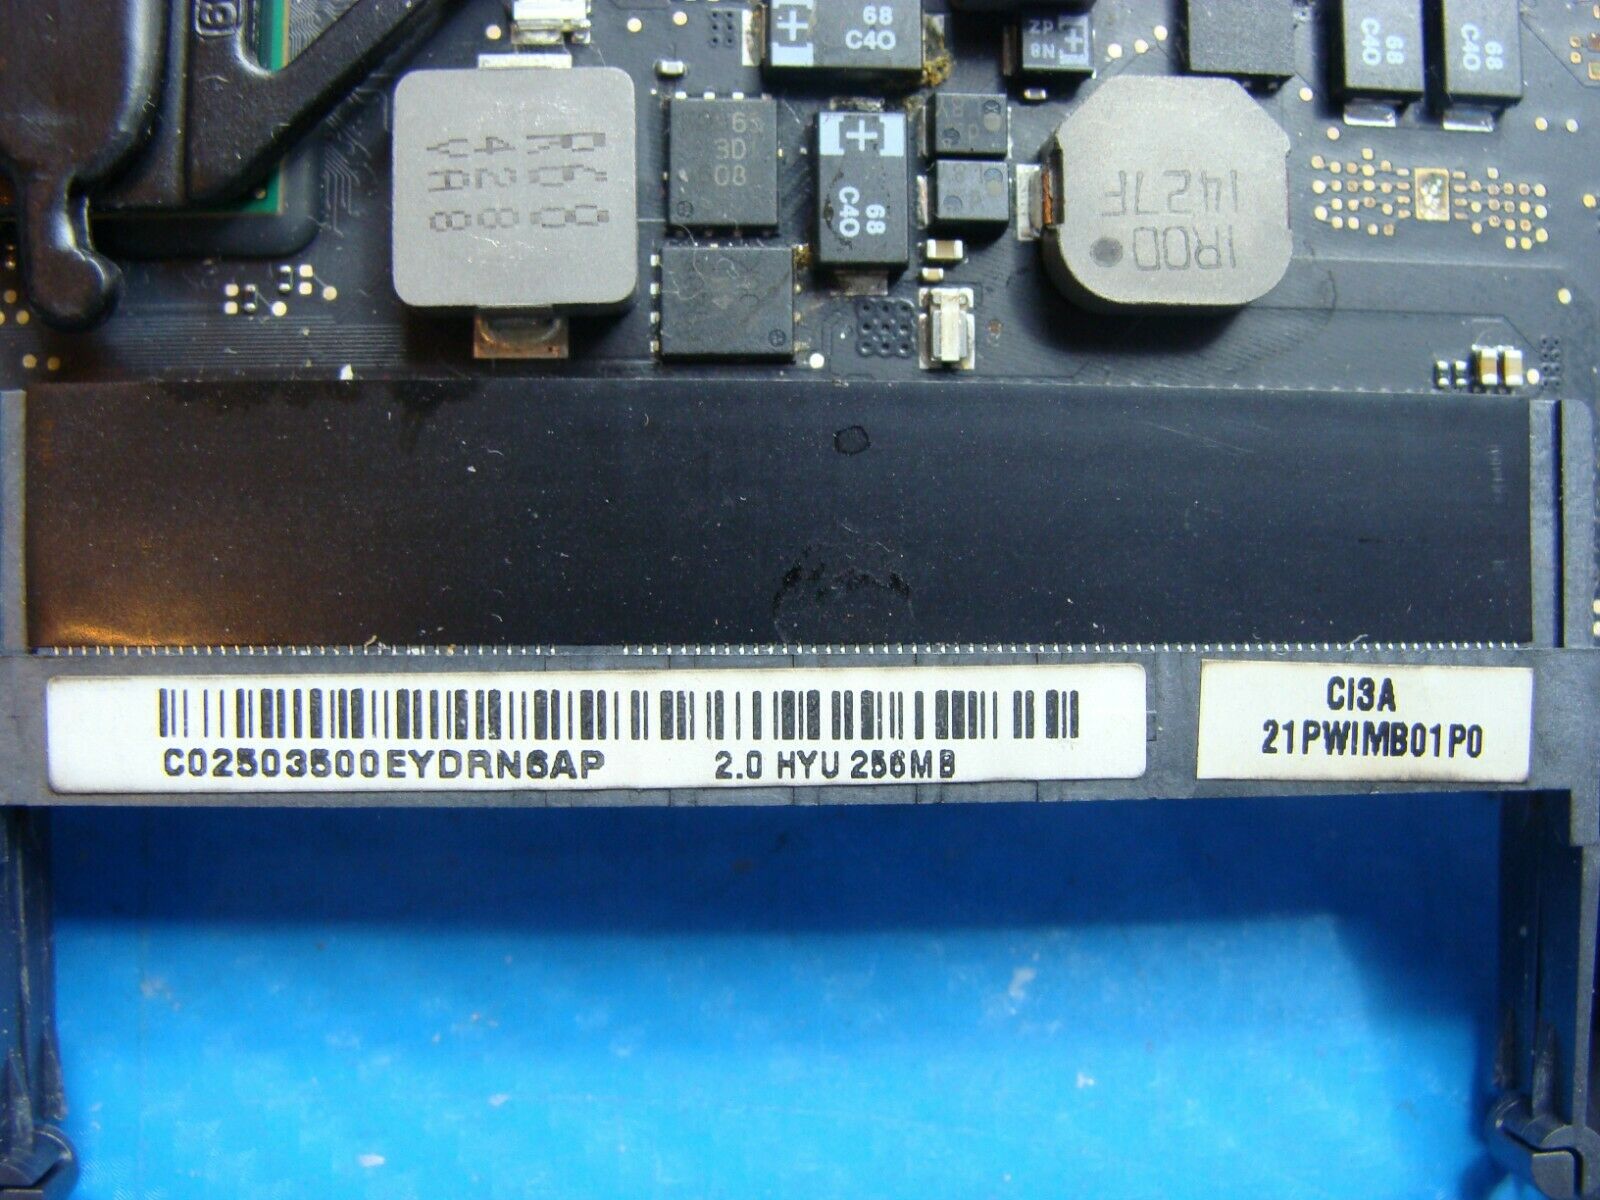 MacBook Pro A1286 MC721LL/A 2011 15